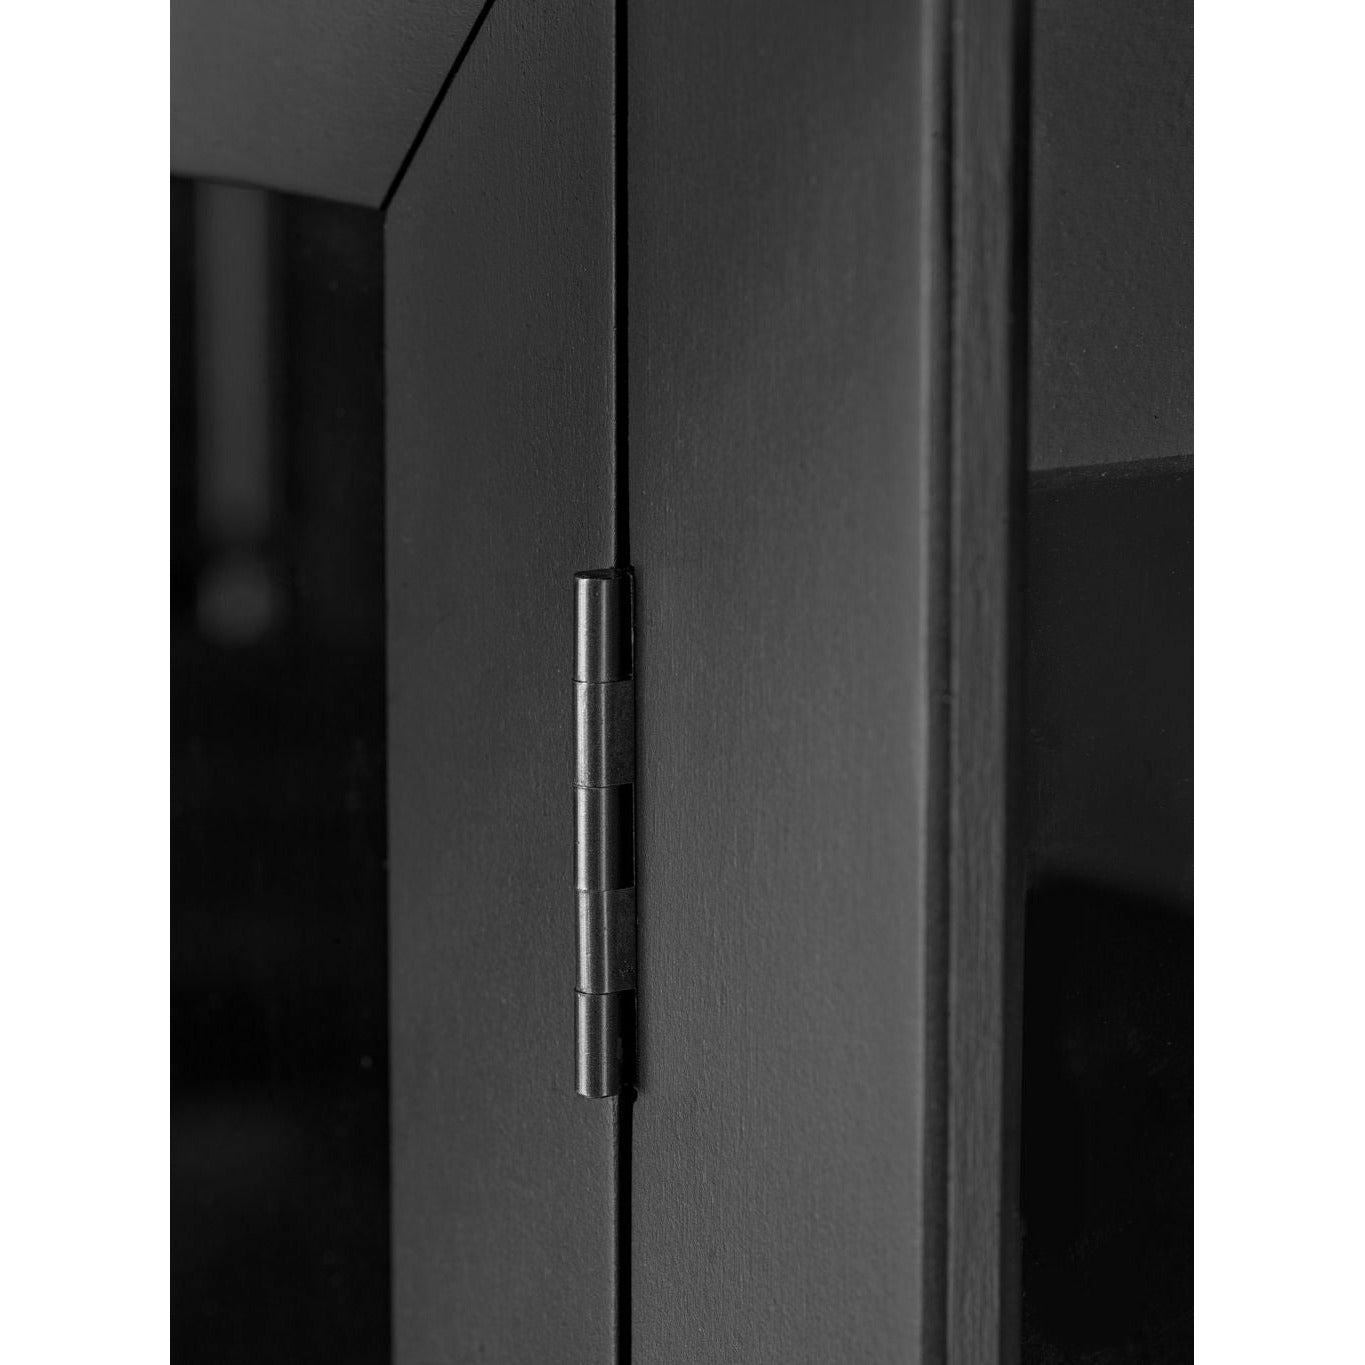 FDB Møbler A90 BODERNE Display Cabinet faggio nero laccato, H: 127 cm